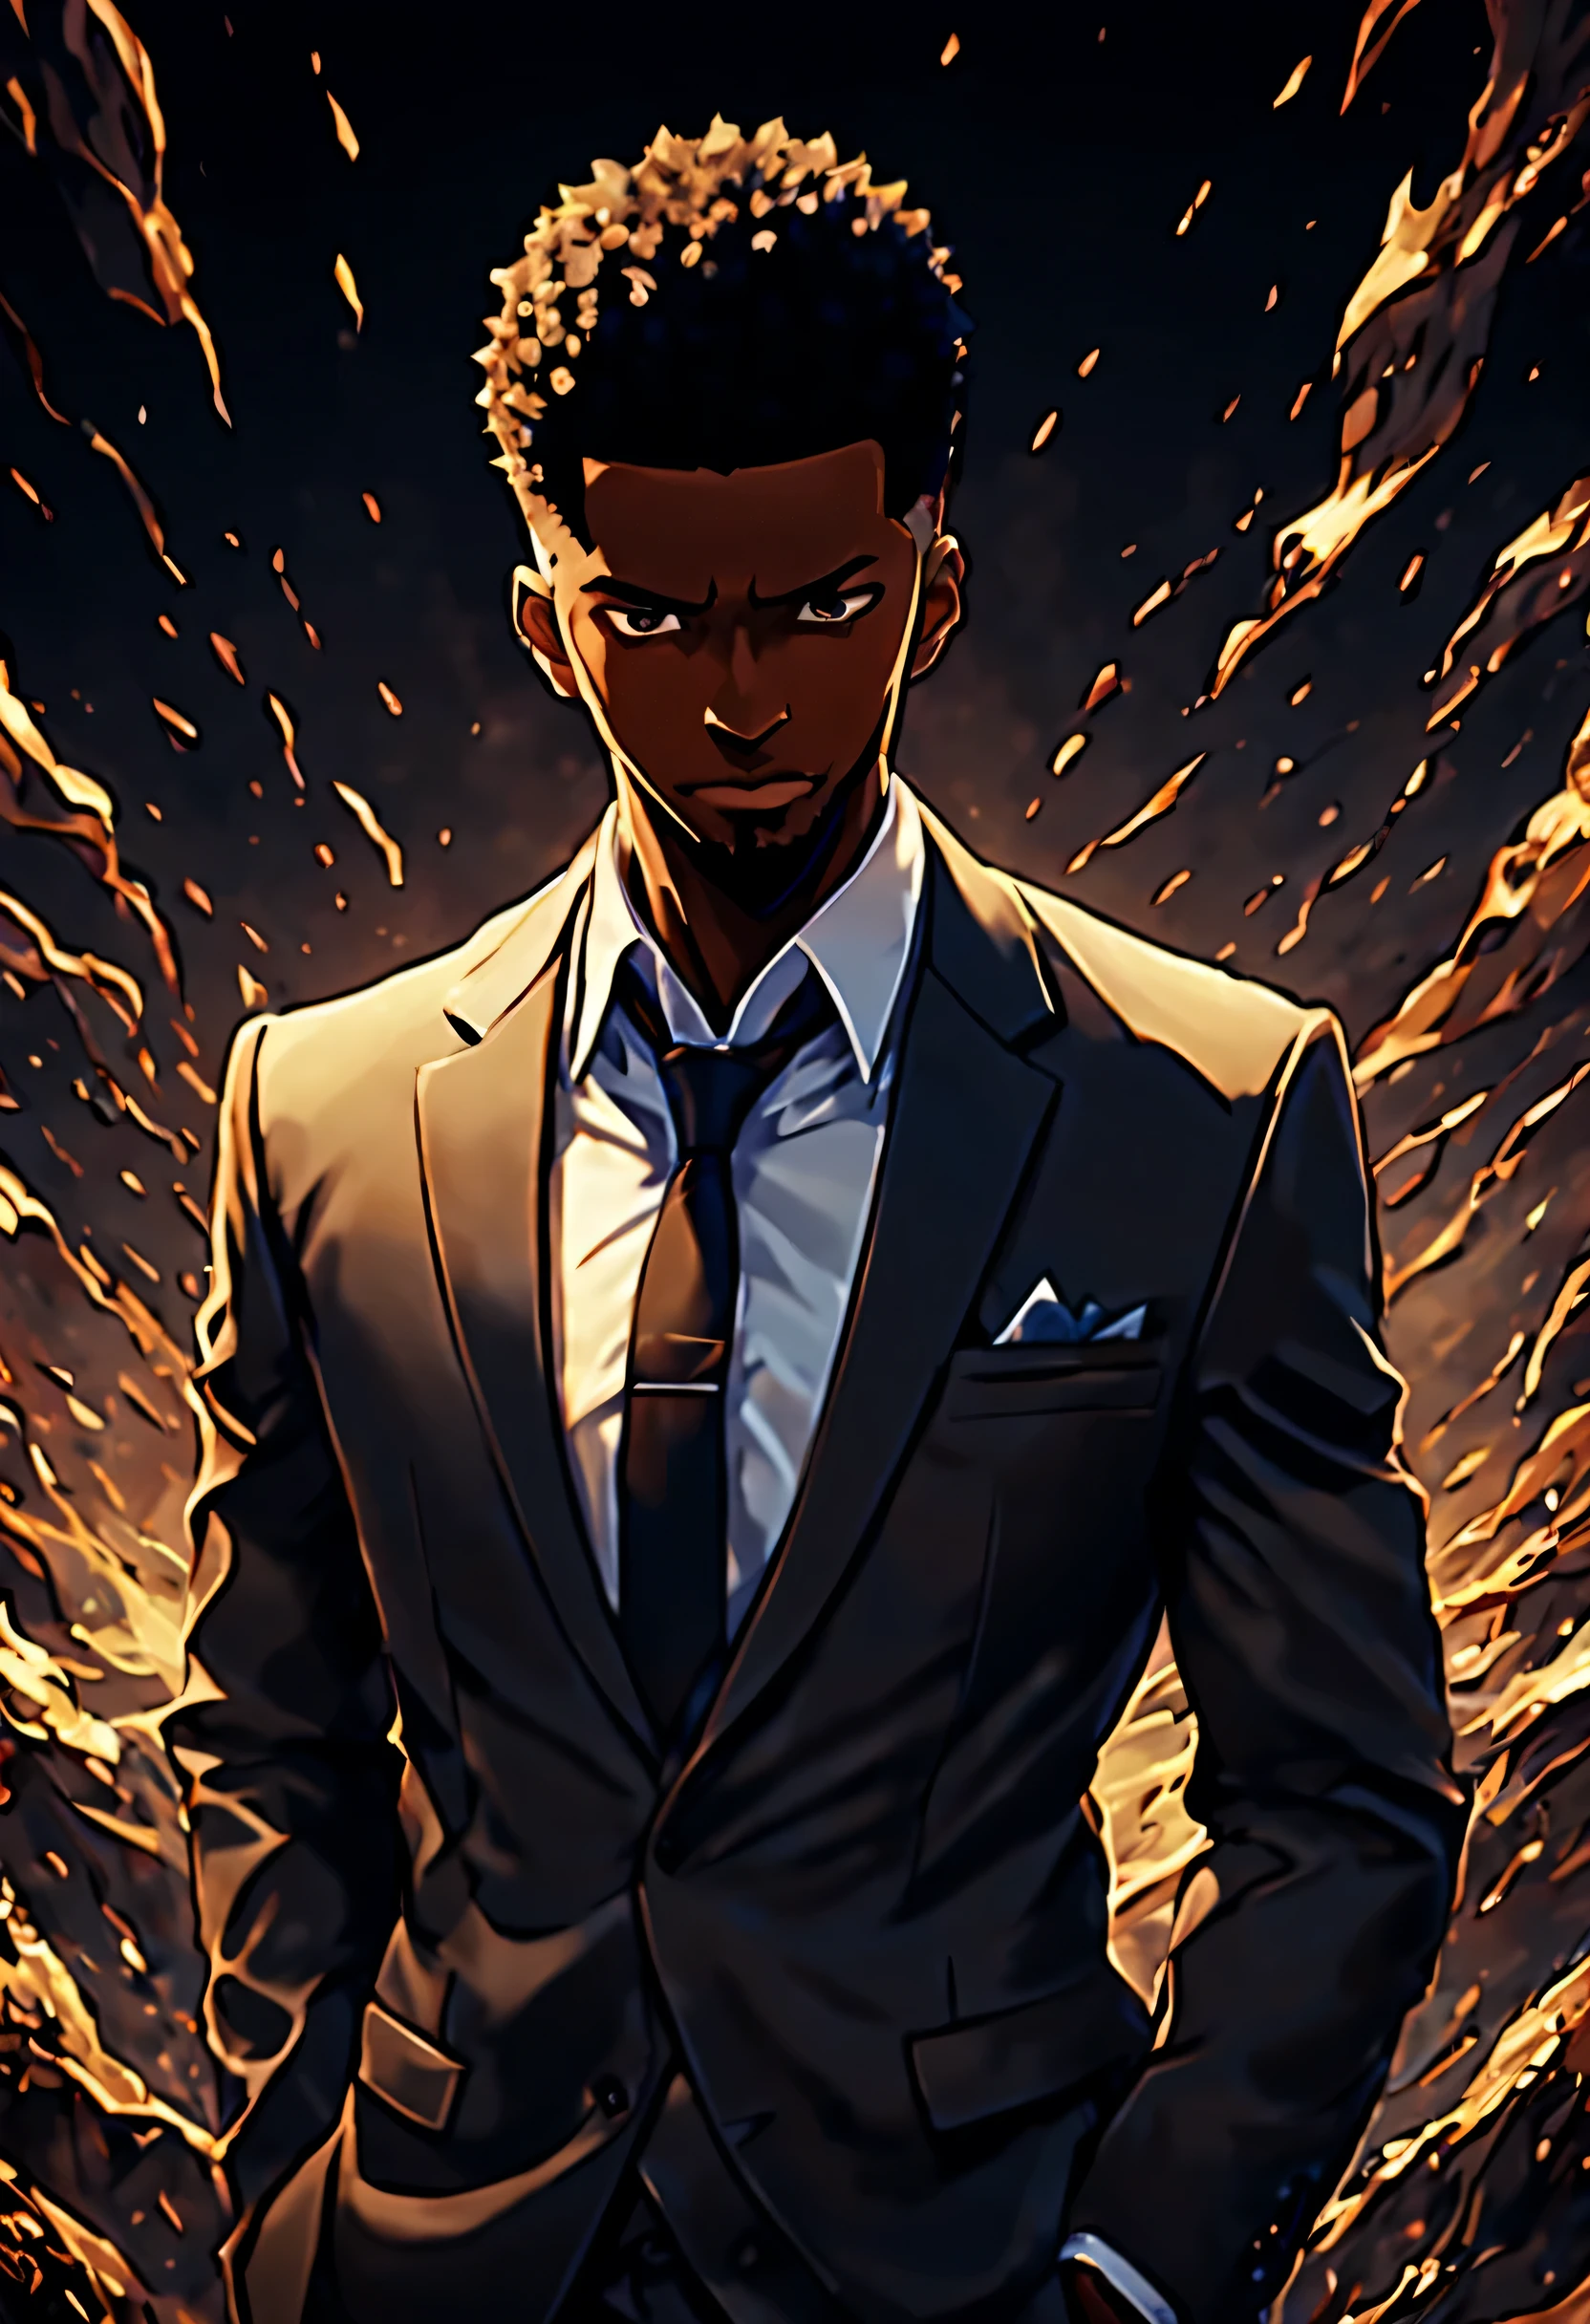 أنيمي, التسوية المنفردة, short black adult male أنيمي character in a suit and buzzcut, 8 ك, أفضل جودة, أفضل تفصيلا, تفاصيل معقدة, التفاصيل المفرطة, تحفة, الخلفية السينمائية